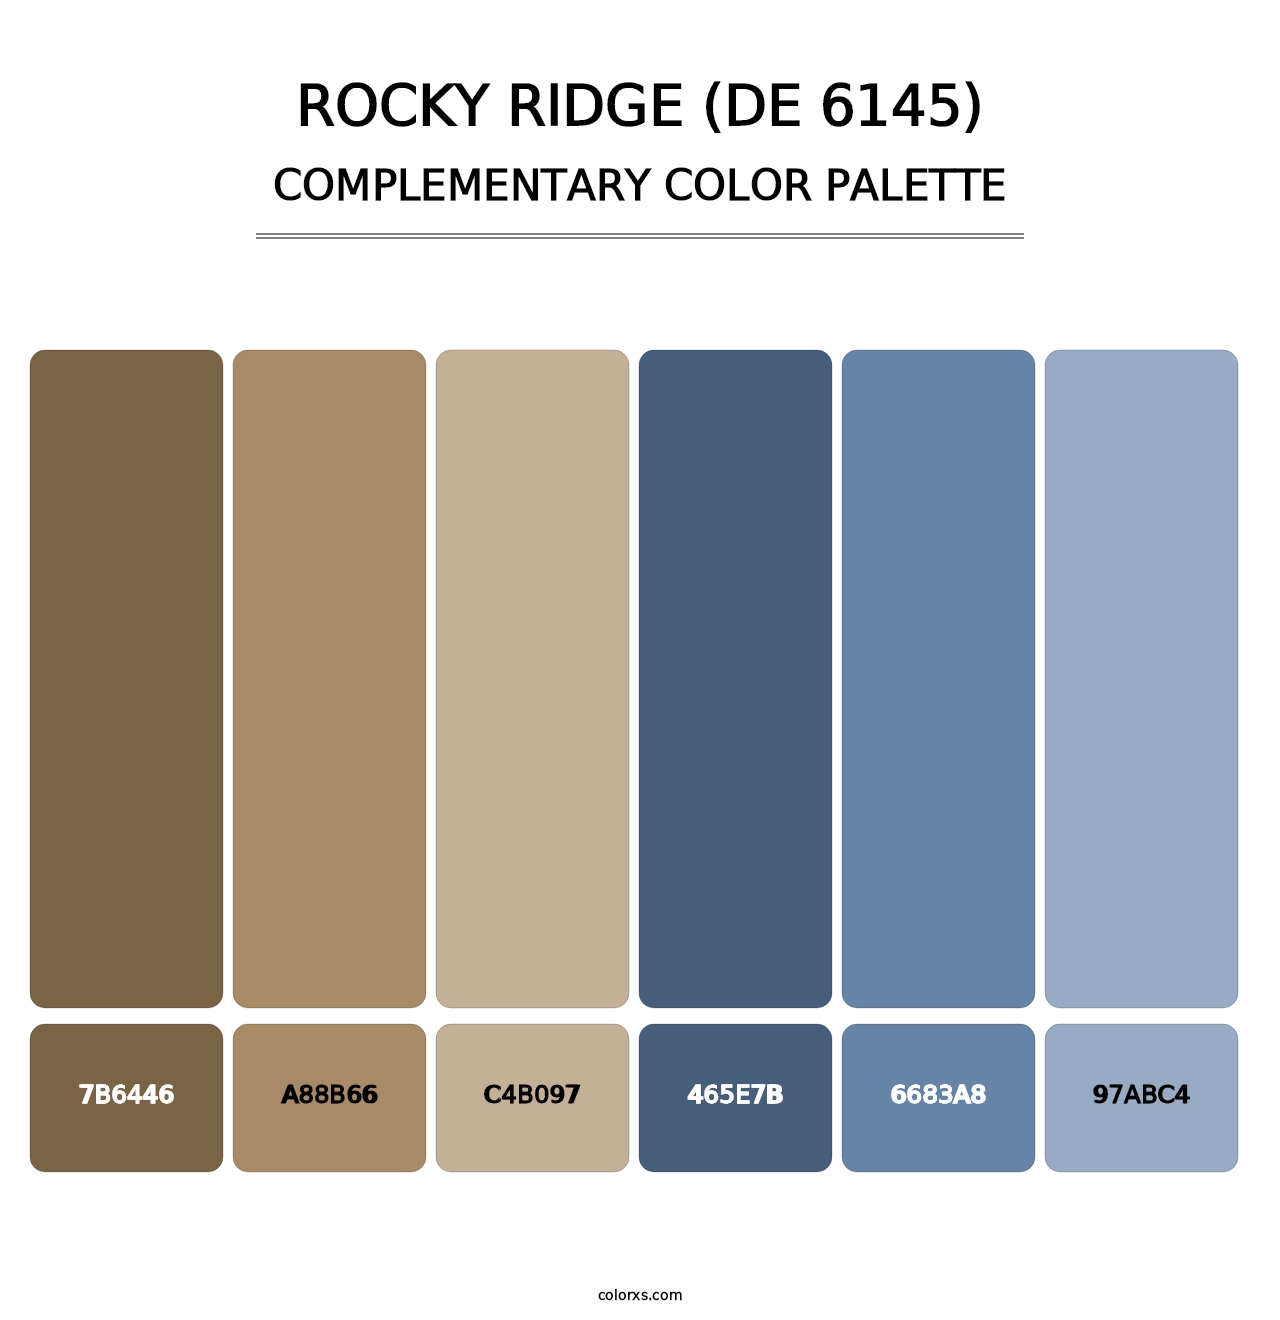 Rocky Ridge (DE 6145) - Complementary Color Palette